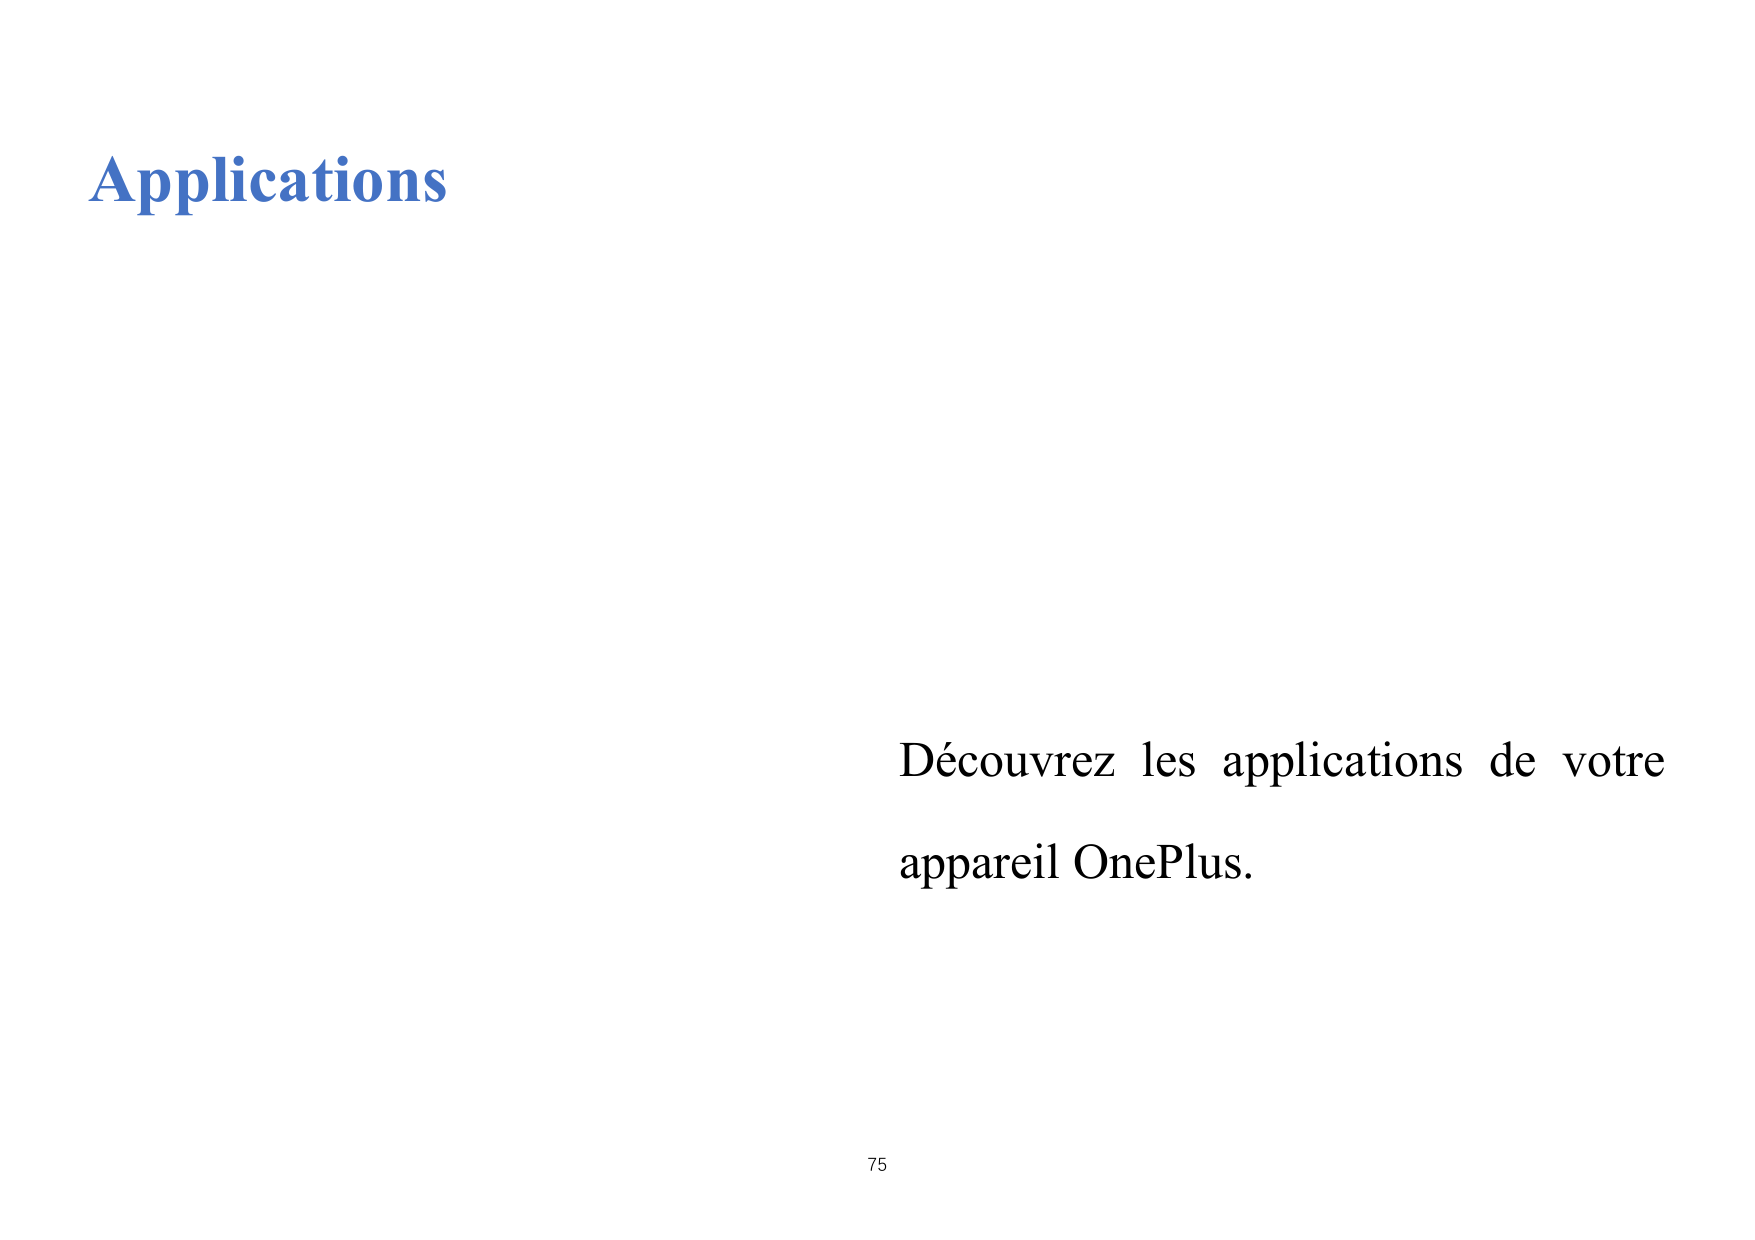 ApplicationsDécouvrez les applications de votreappareil OnePlus.75